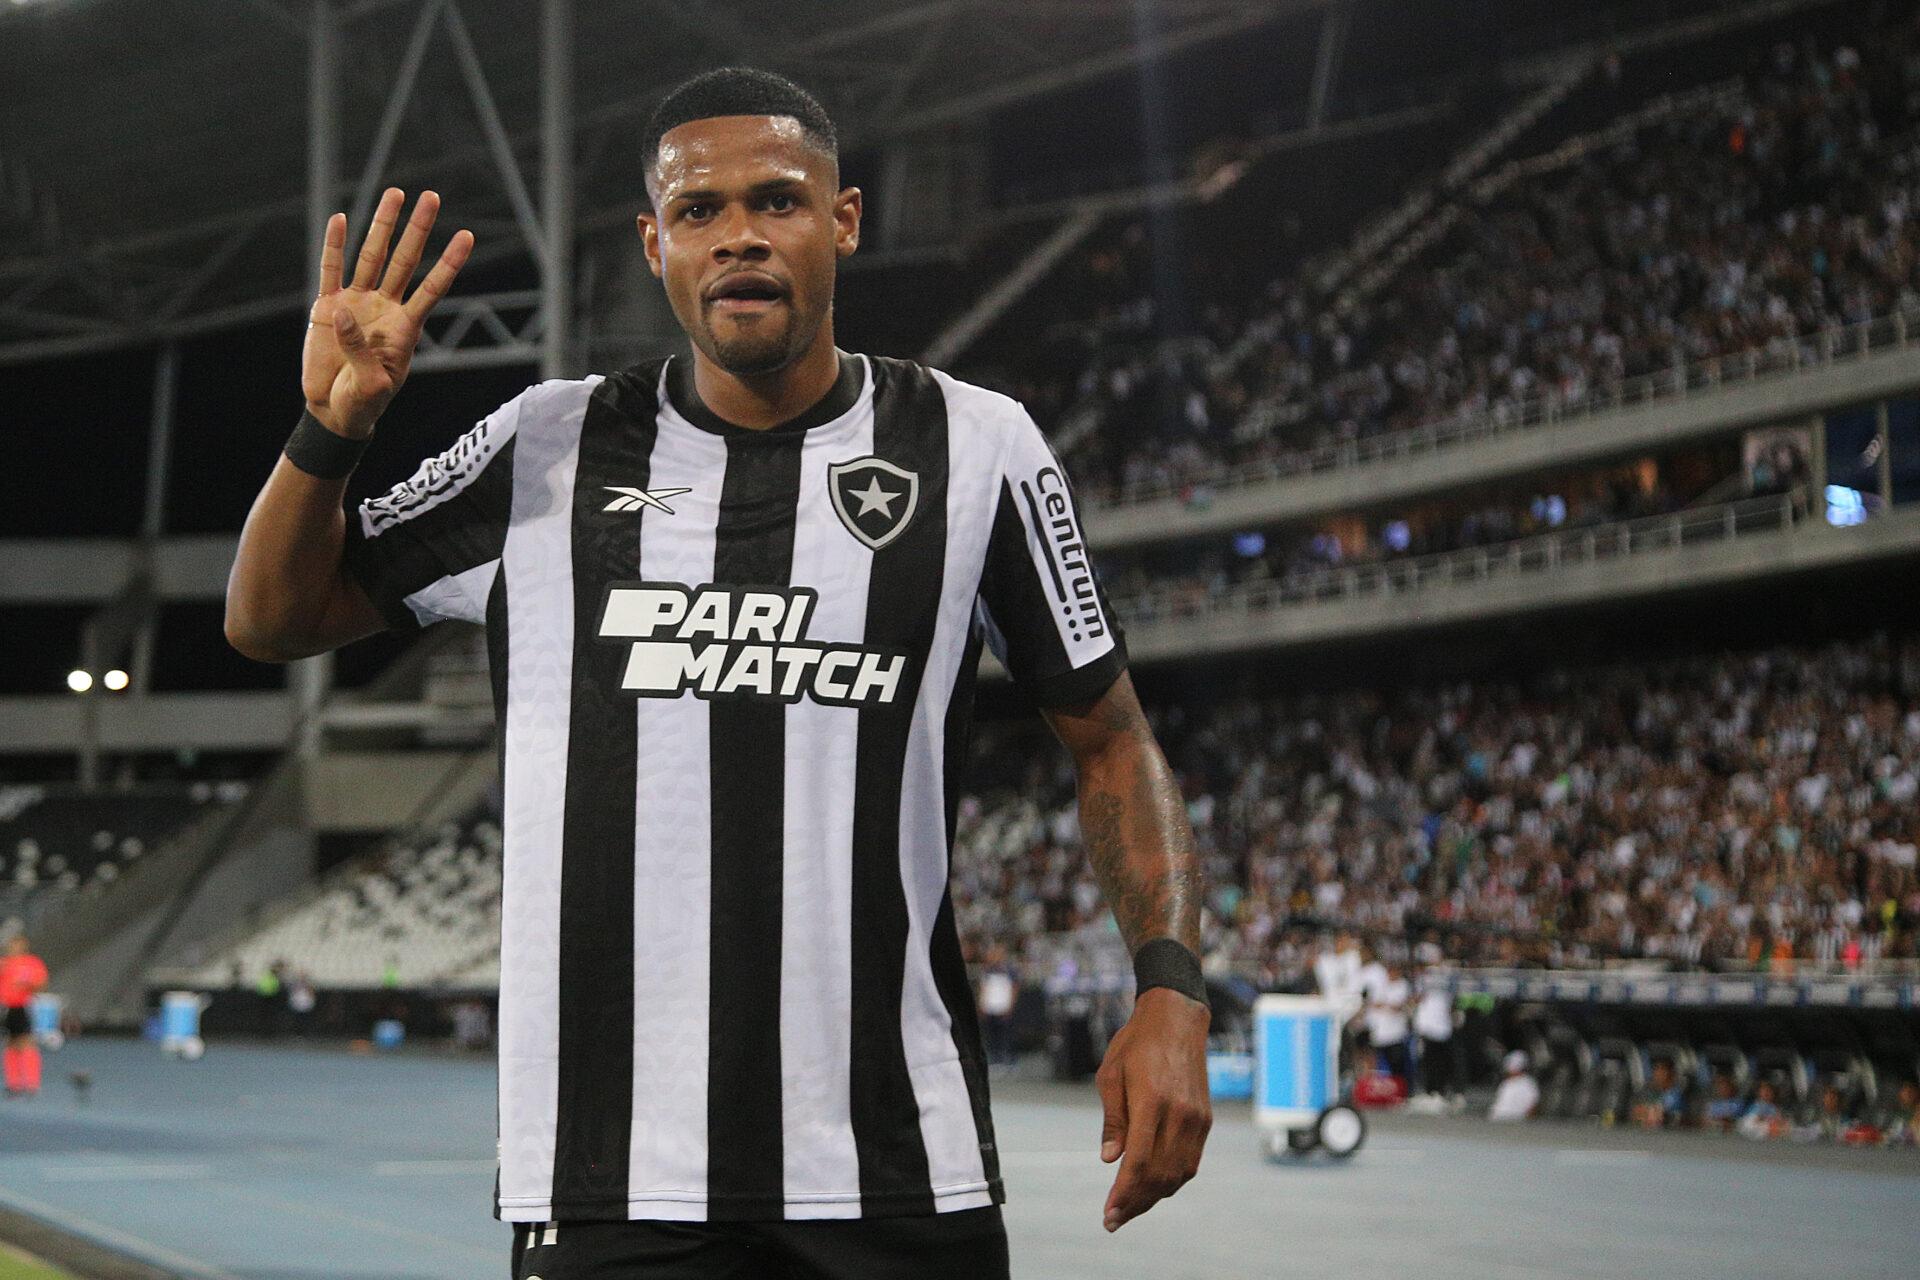 Júnior Santos - Botafogo